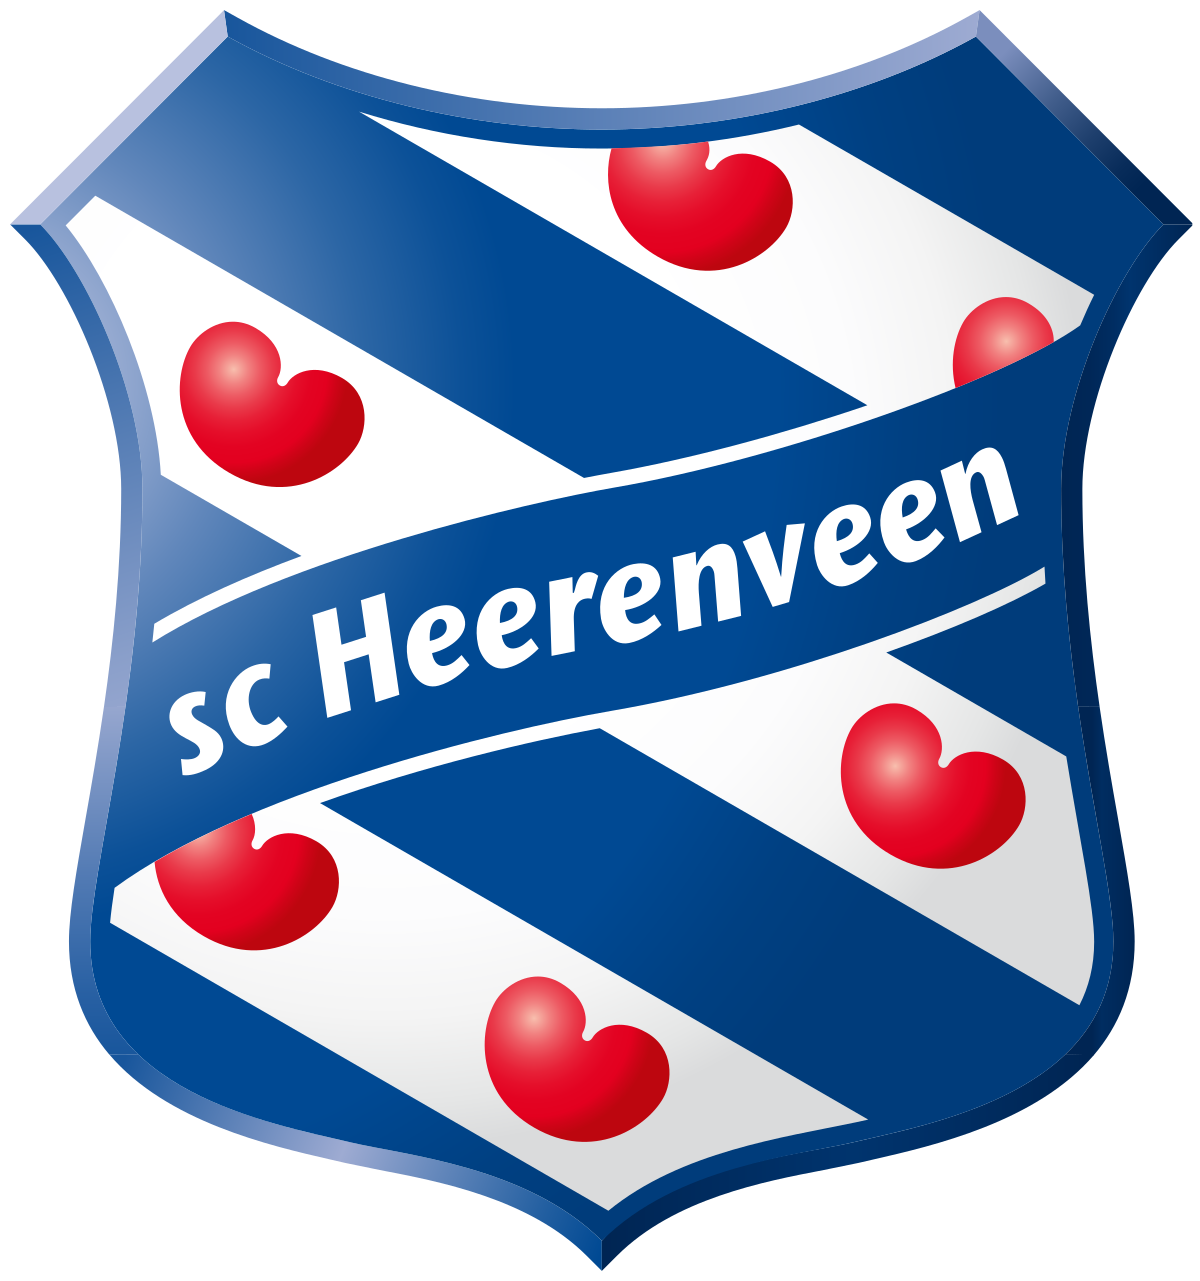 Nữ Heerenveen SC